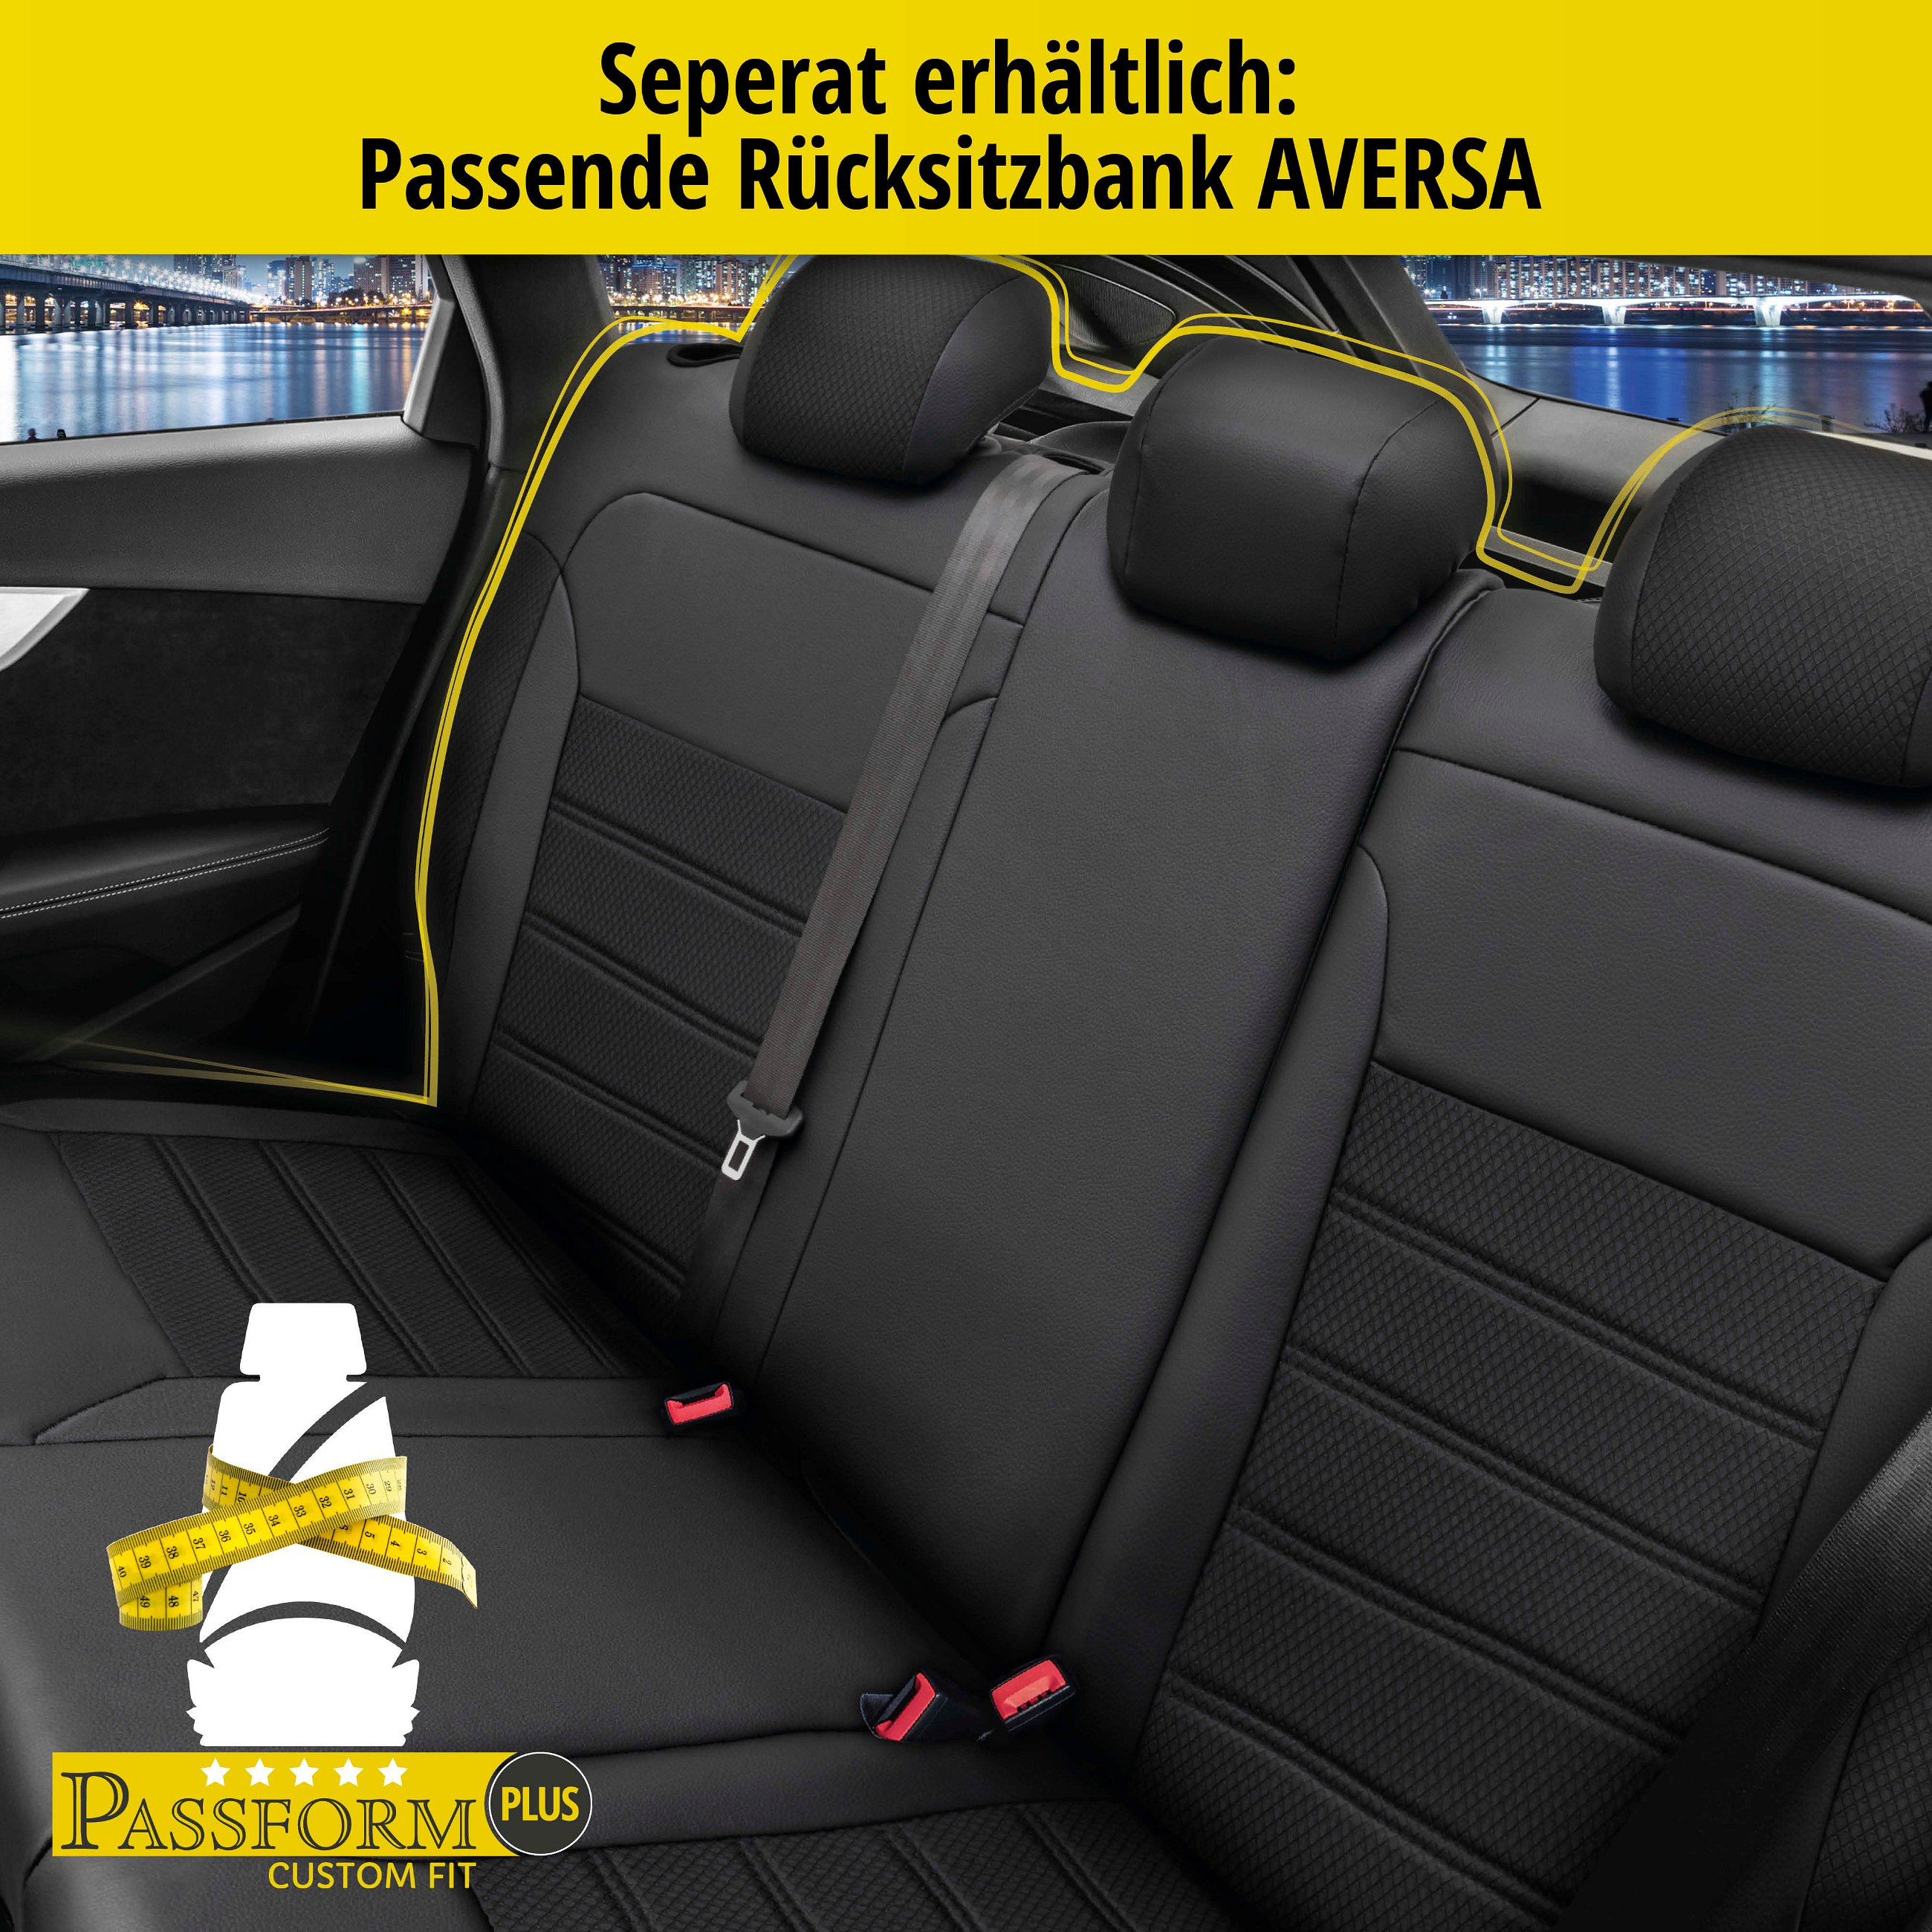 Passform Sitzbezug Aversa für Mercedes-Benz E-Klasse (W124) 02/1993-06/1996, 2 Einzelsitzbezüge für Normalsitze